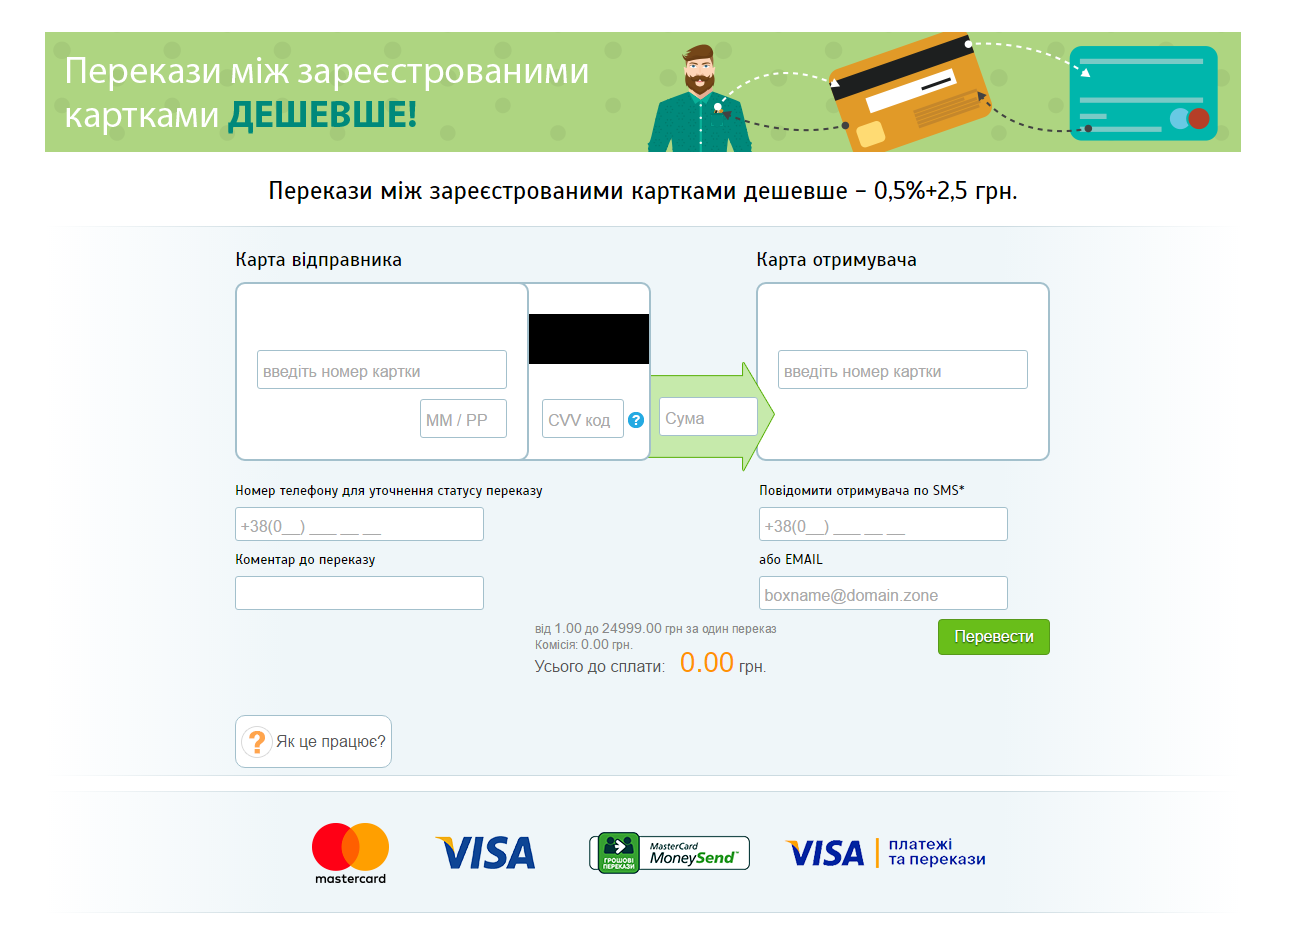 Банк отказал в оформлении карты через мобильное приложение пушкинская карта